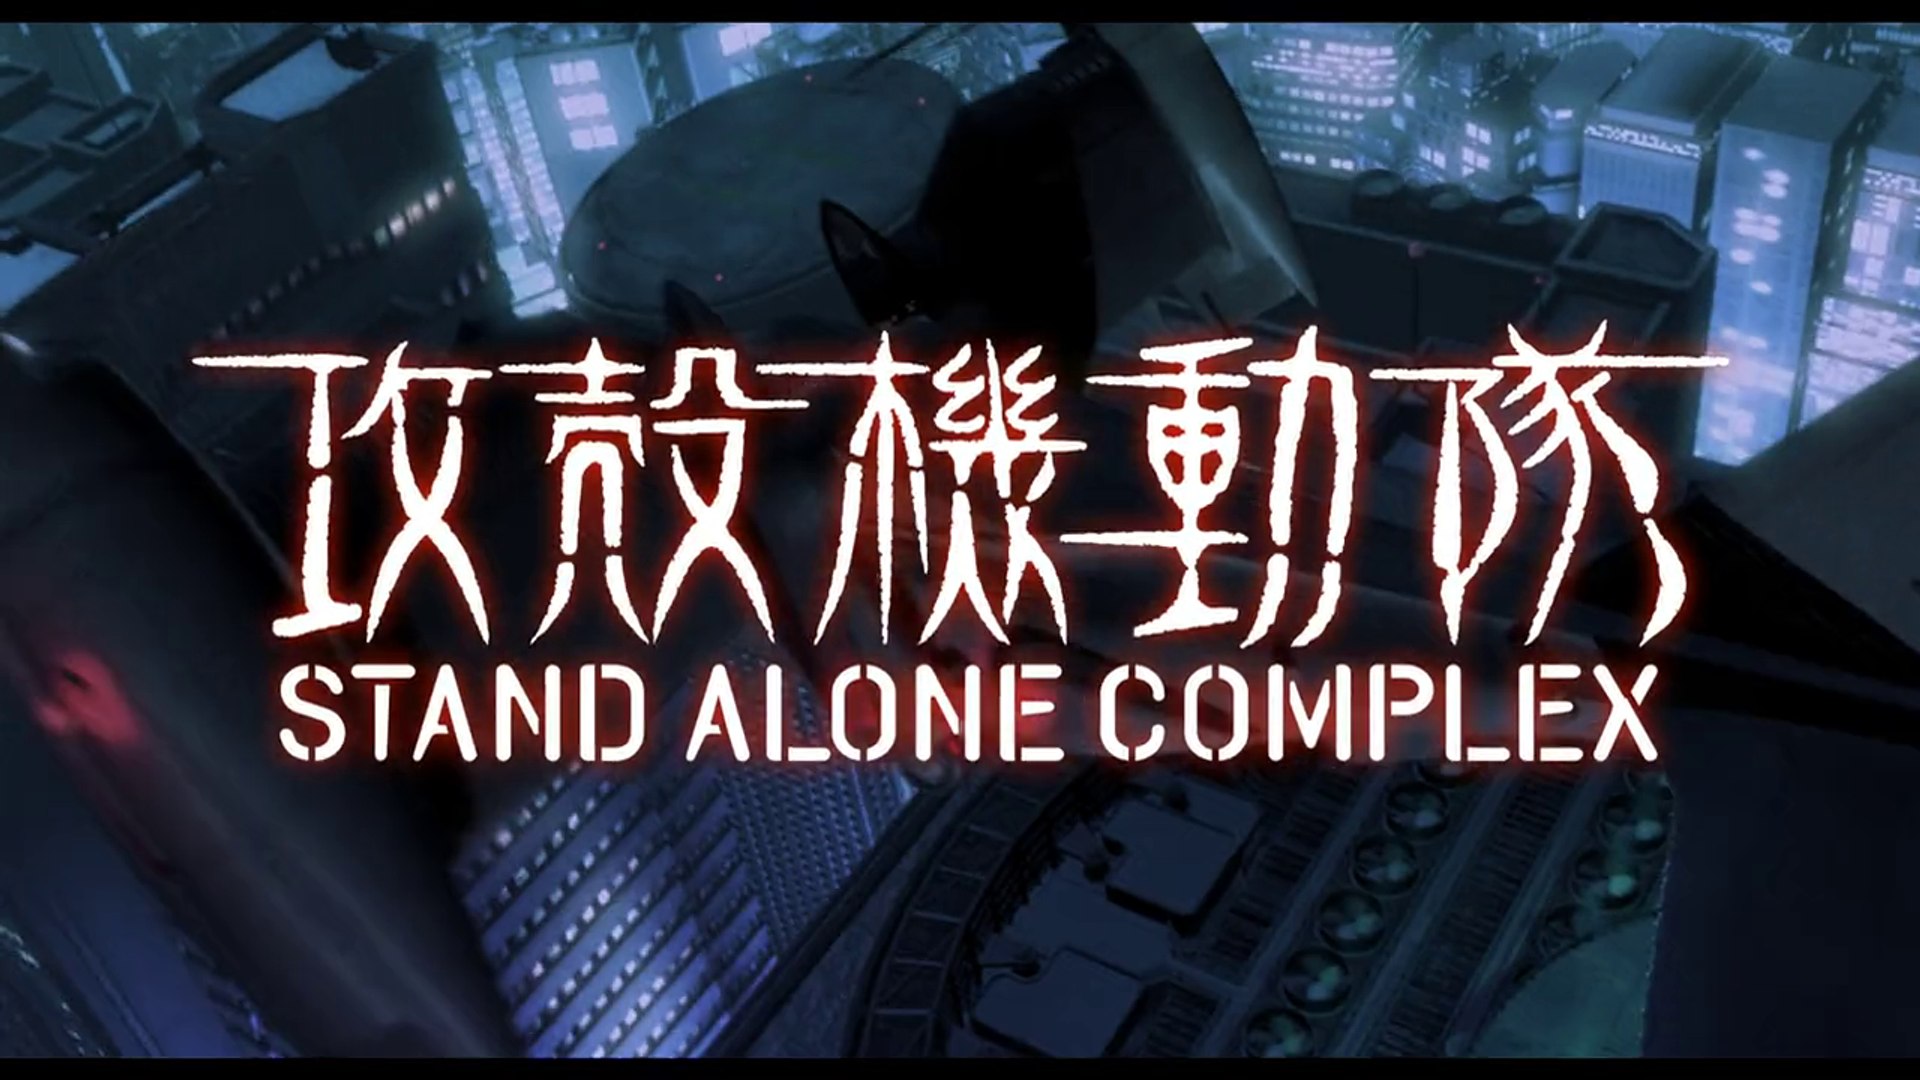 攻殻機動隊 Stand Alone Complex Ep 01 公安9課 Section 9 動画 Dailymotion